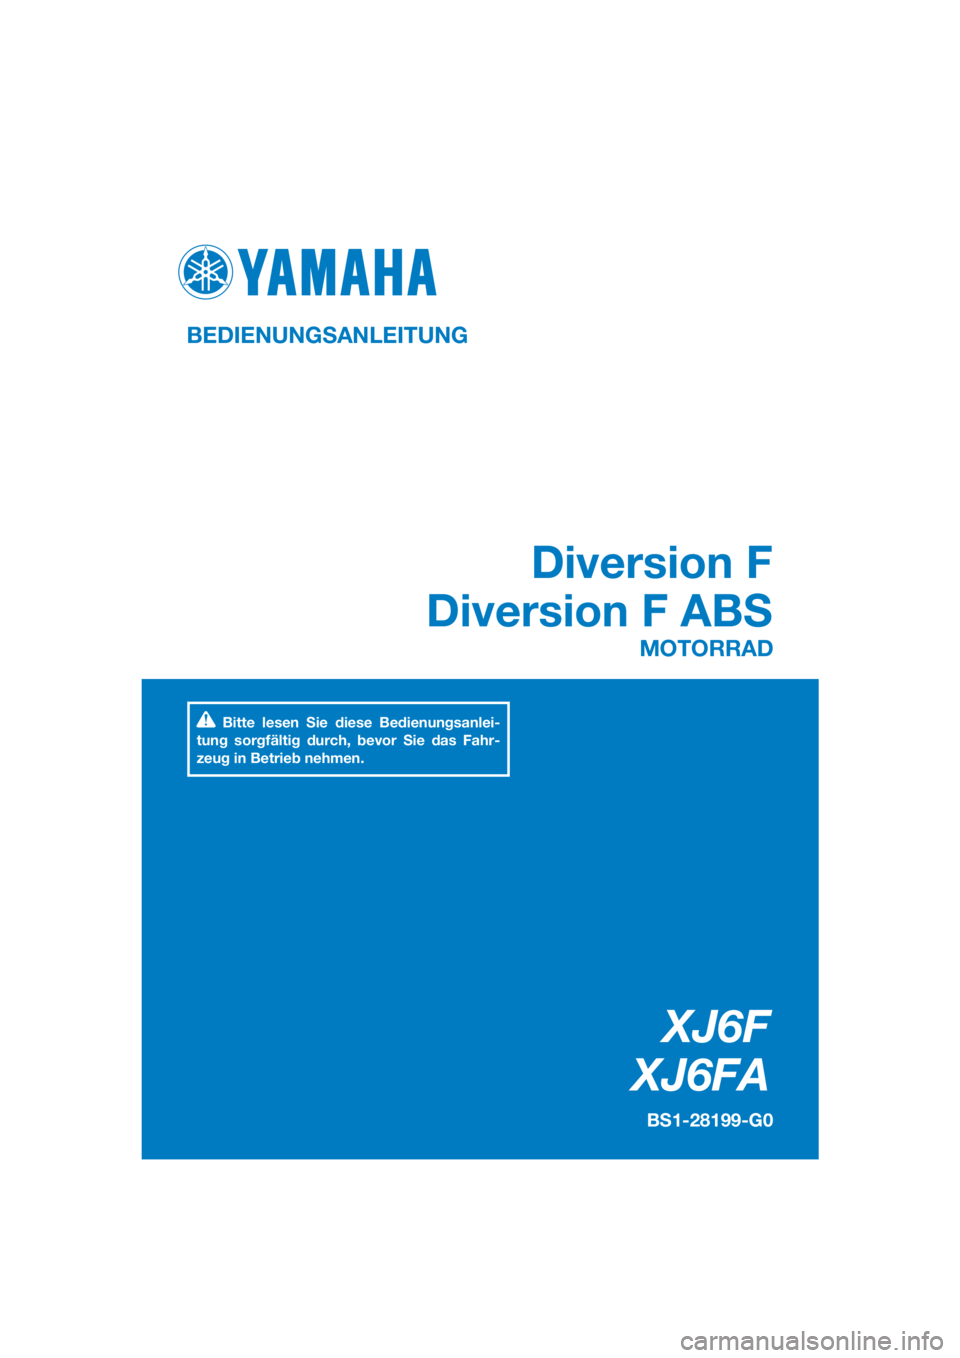 YAMAHA XJ6F 2016  Betriebsanleitungen (in German) DIC183
XJ6F
XJ6FA
Diversion F
Diversion F ABS
BEDIENUNGSANLEITUNG
BS1-28199-G0
MOTORRAD
Bitte lesen Sie diese Bedienungsanlei-
tung sorgfältig durch, bevor Sie das Fahr-
zeug in Betrieb nehmen.
[Germ